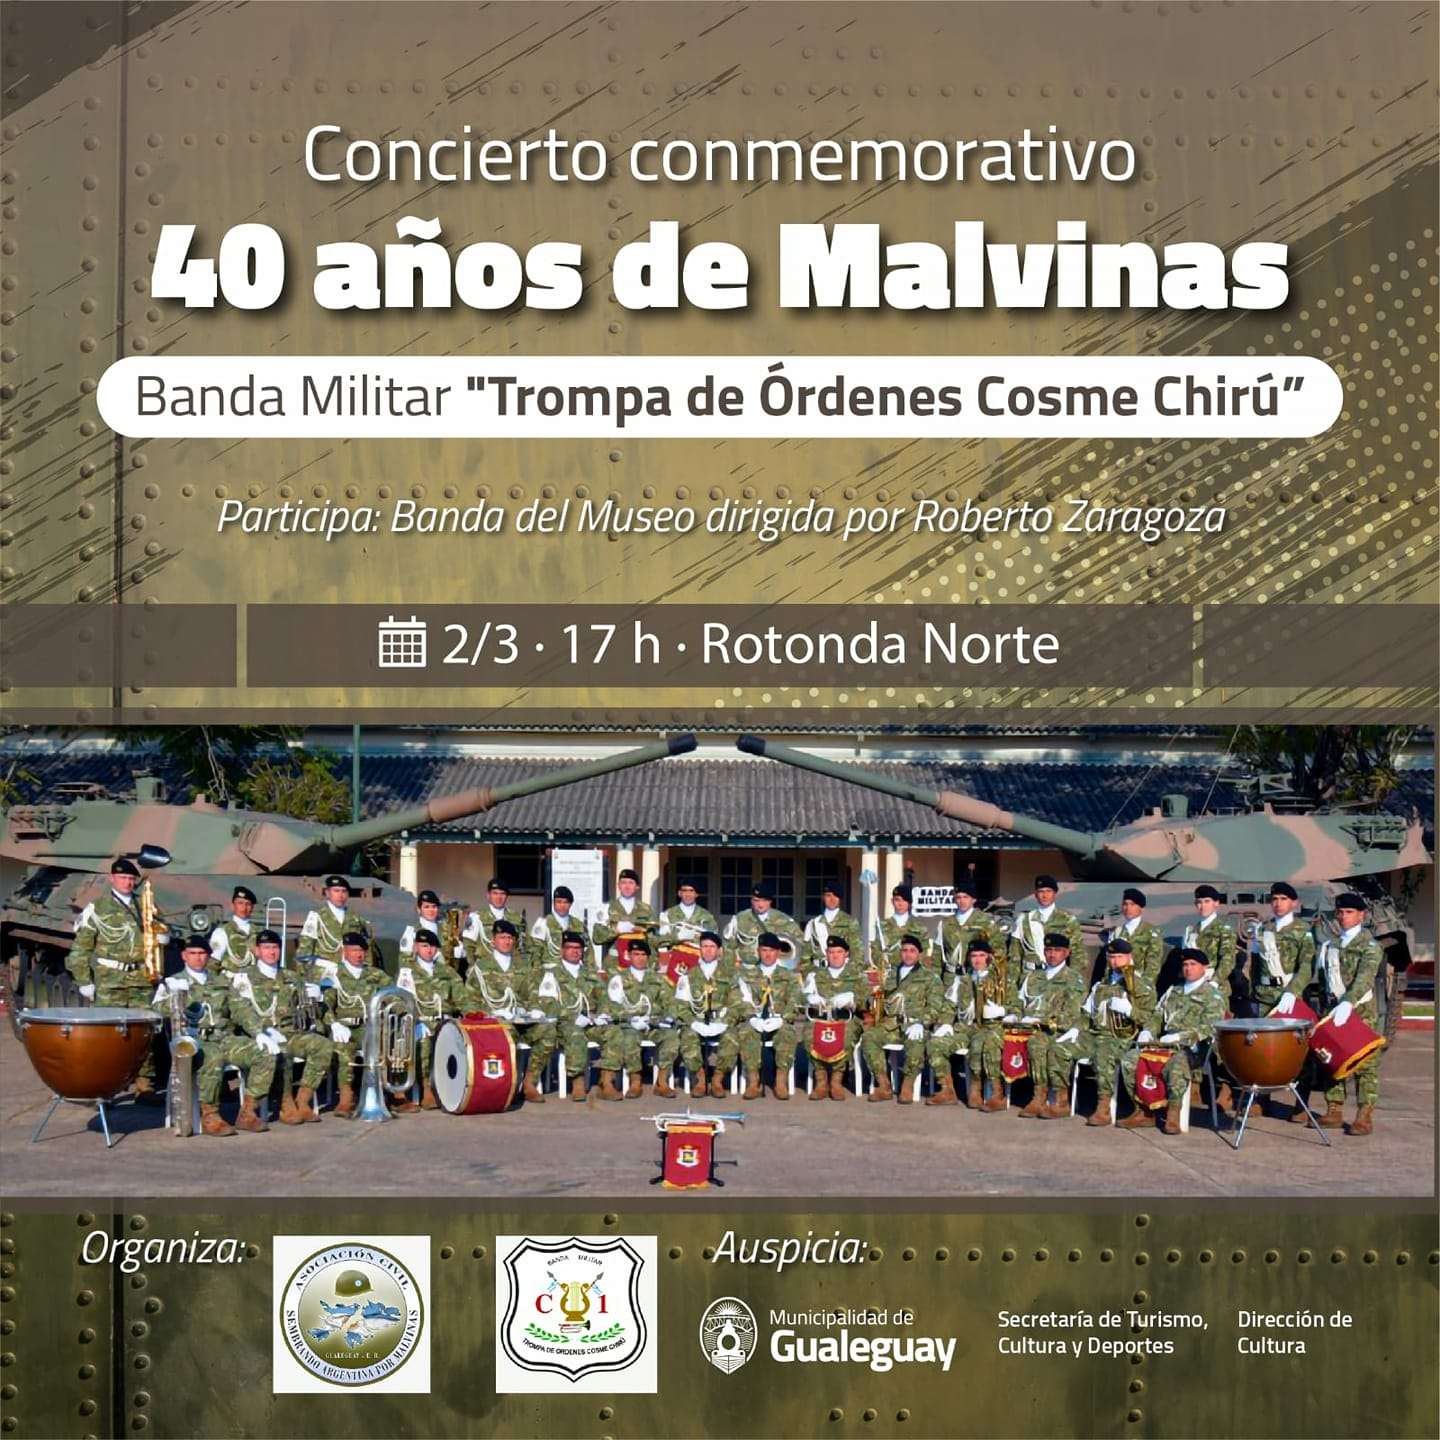 Malvinas: realizarán concierto conmemorativo